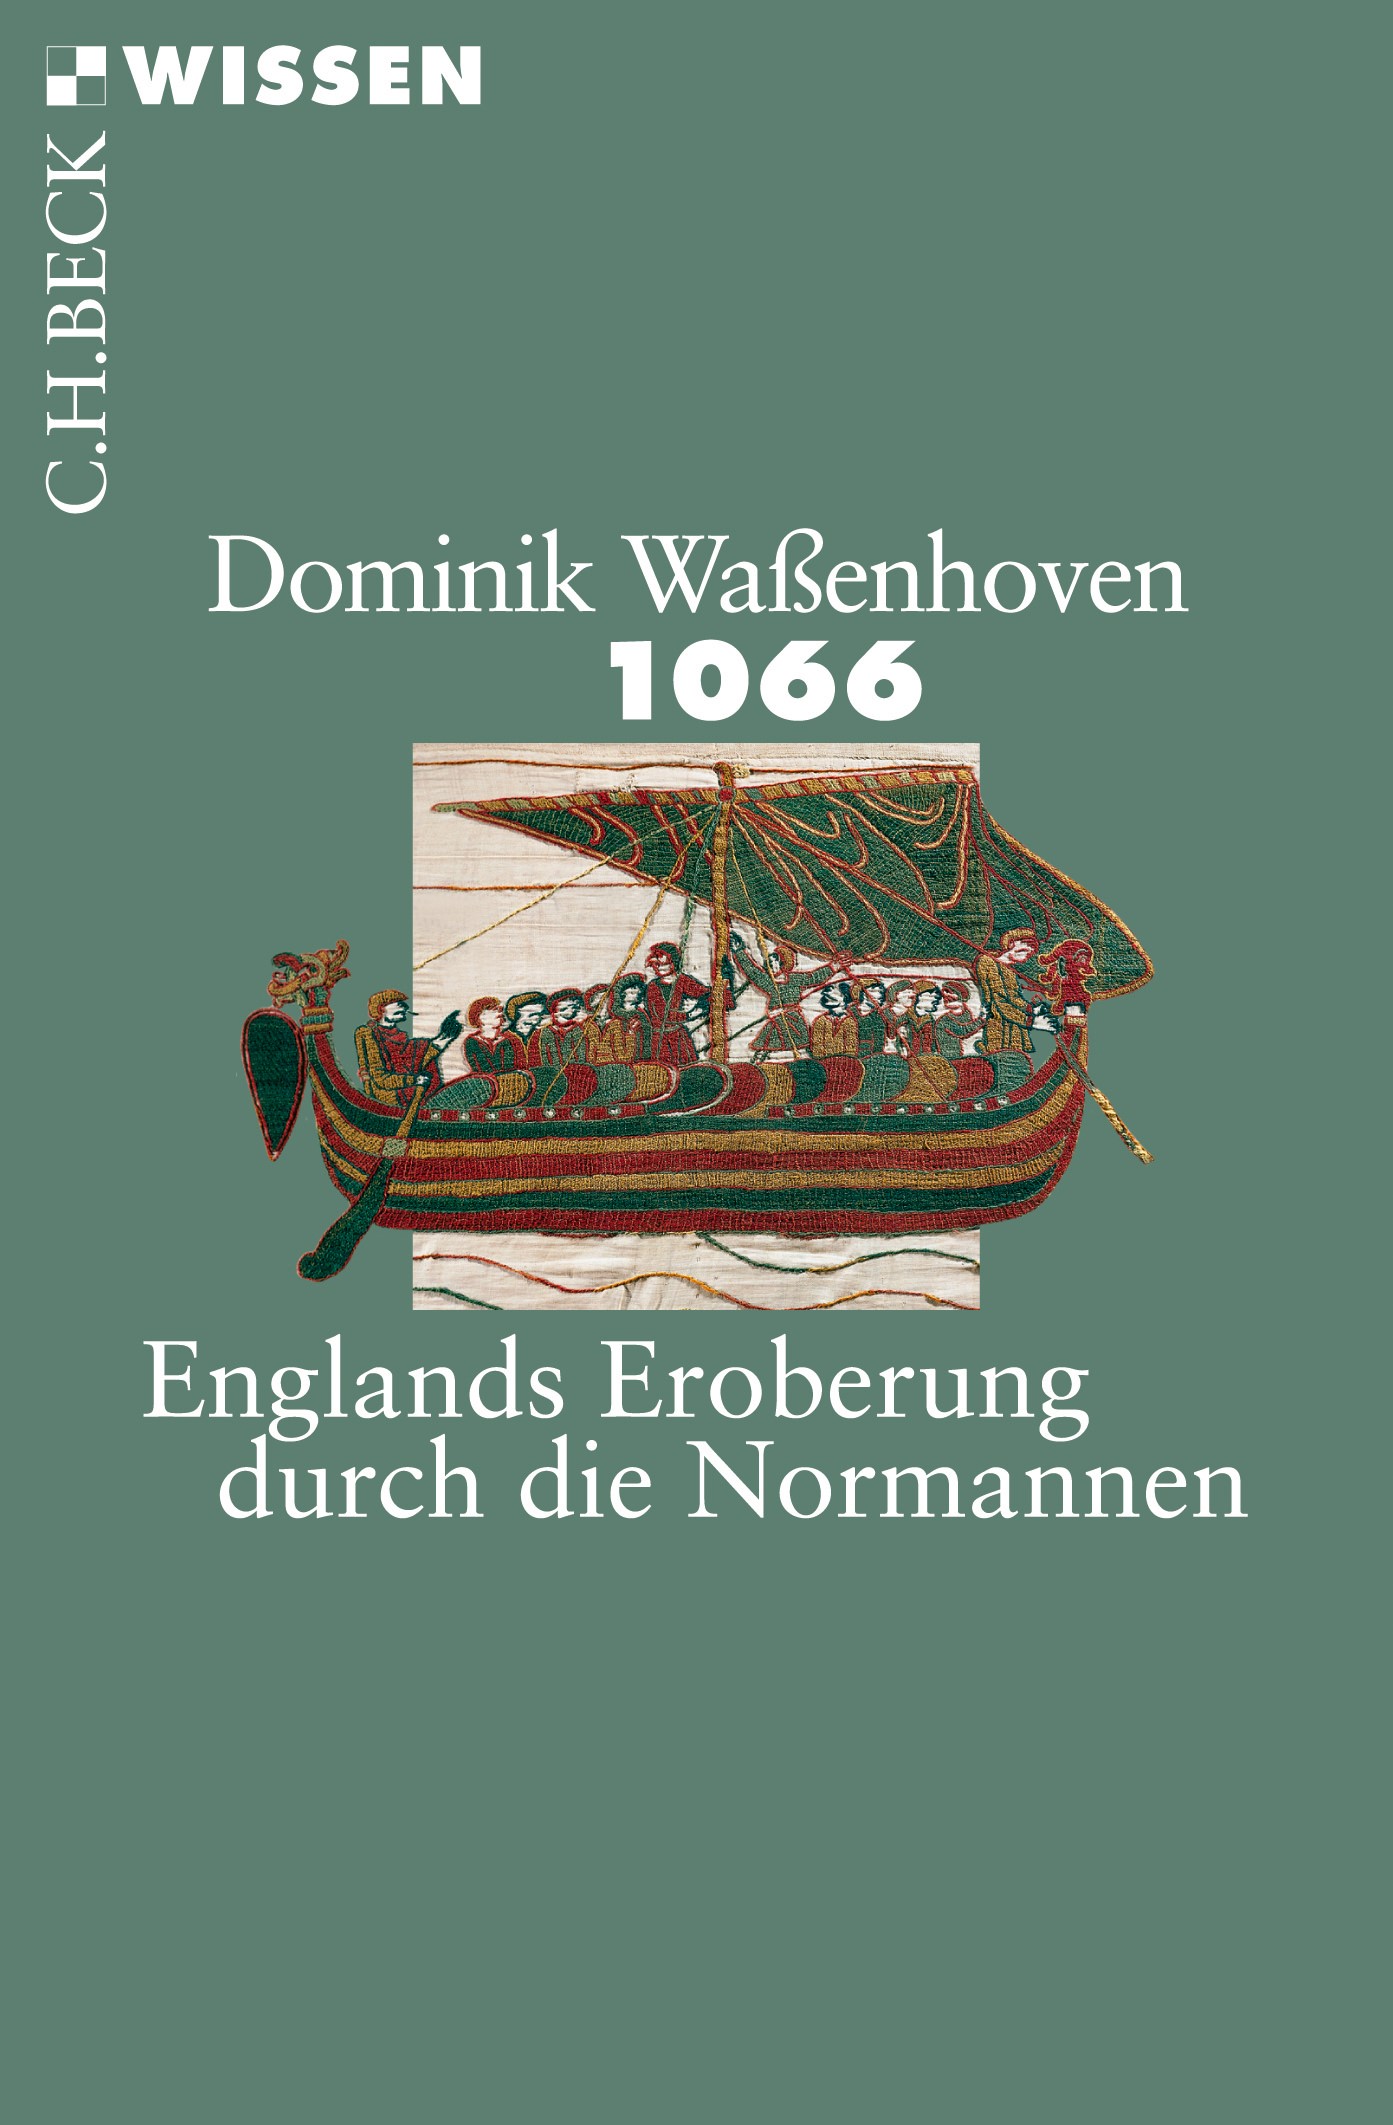 Cover: Waßenhoven, Dominik, 1066